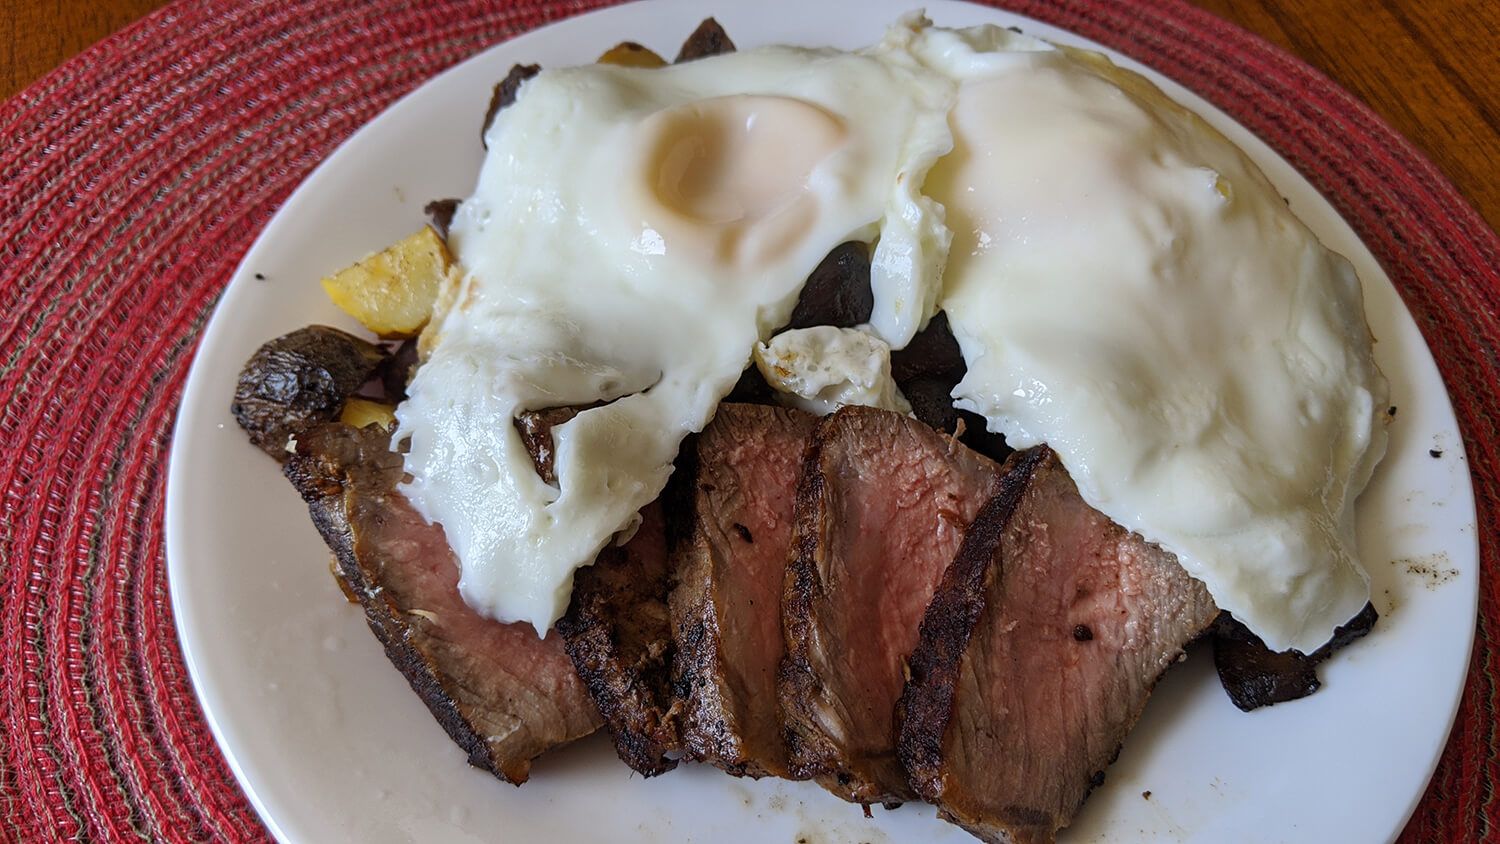 10. Breakfast Steak & Eggs